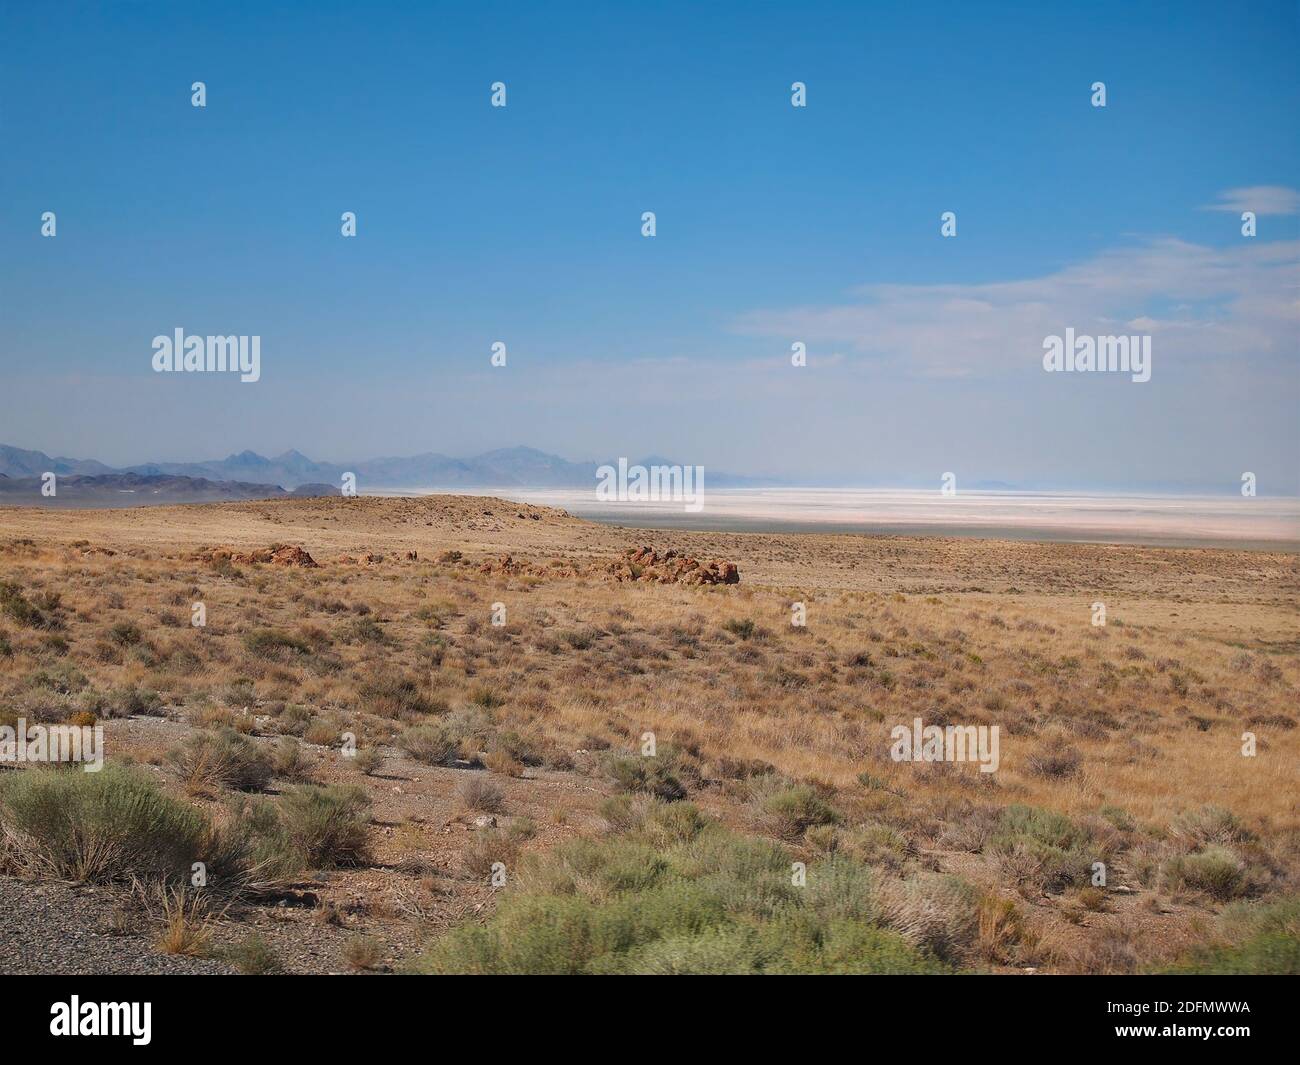 Mirando a través del terreno árido, arenoso, de los escombros del este de Nevada en el desierto del Gran Lago Salado del oeste de Utah. Foto de stock